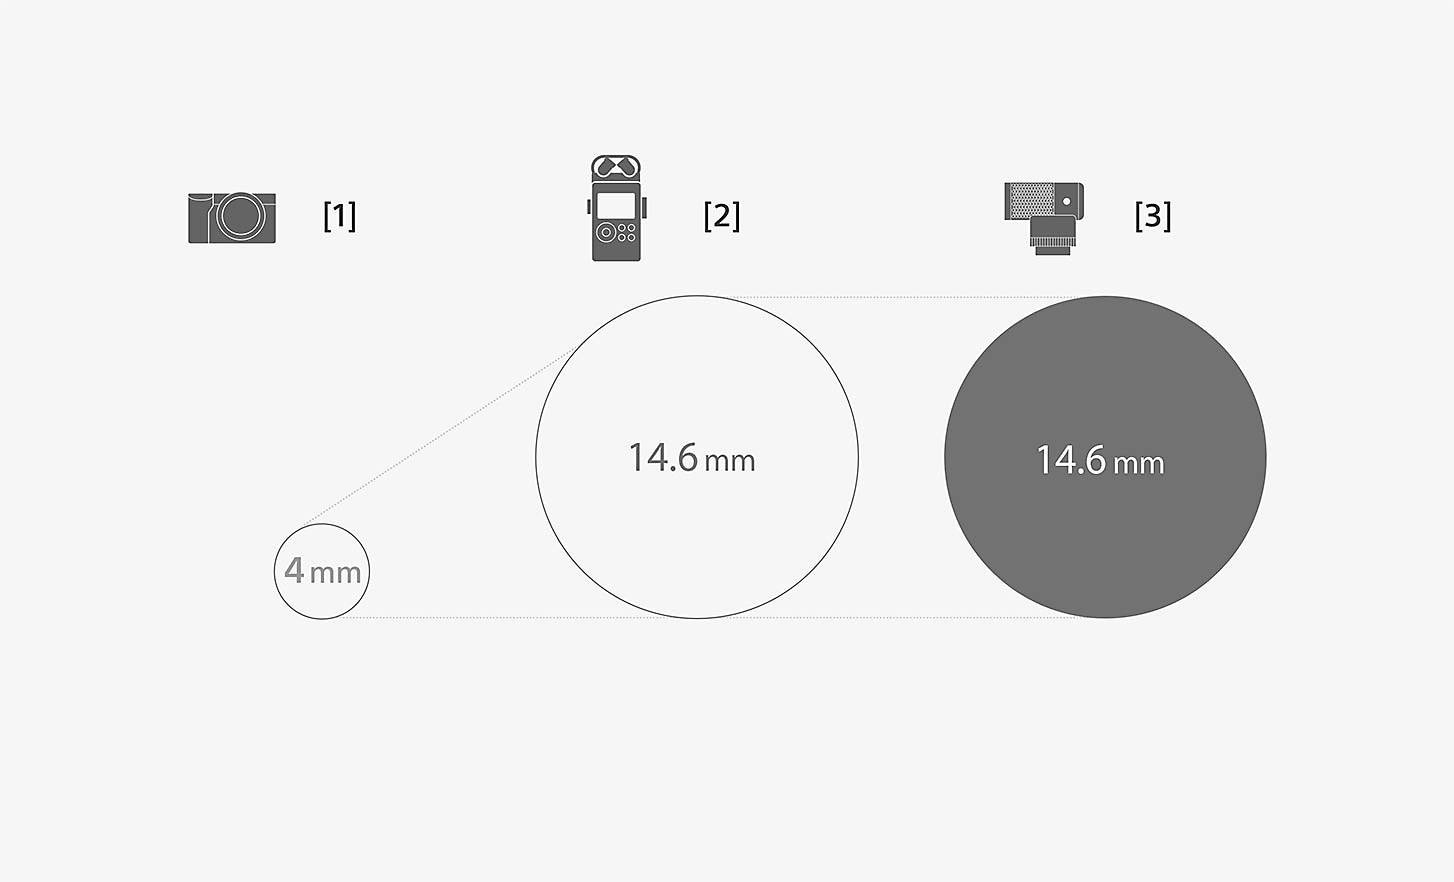 Obrázok porovnávajúci rozmery kapsuly mikrofónu ECM-G1 a štandardného zabudovaného mikrofónu